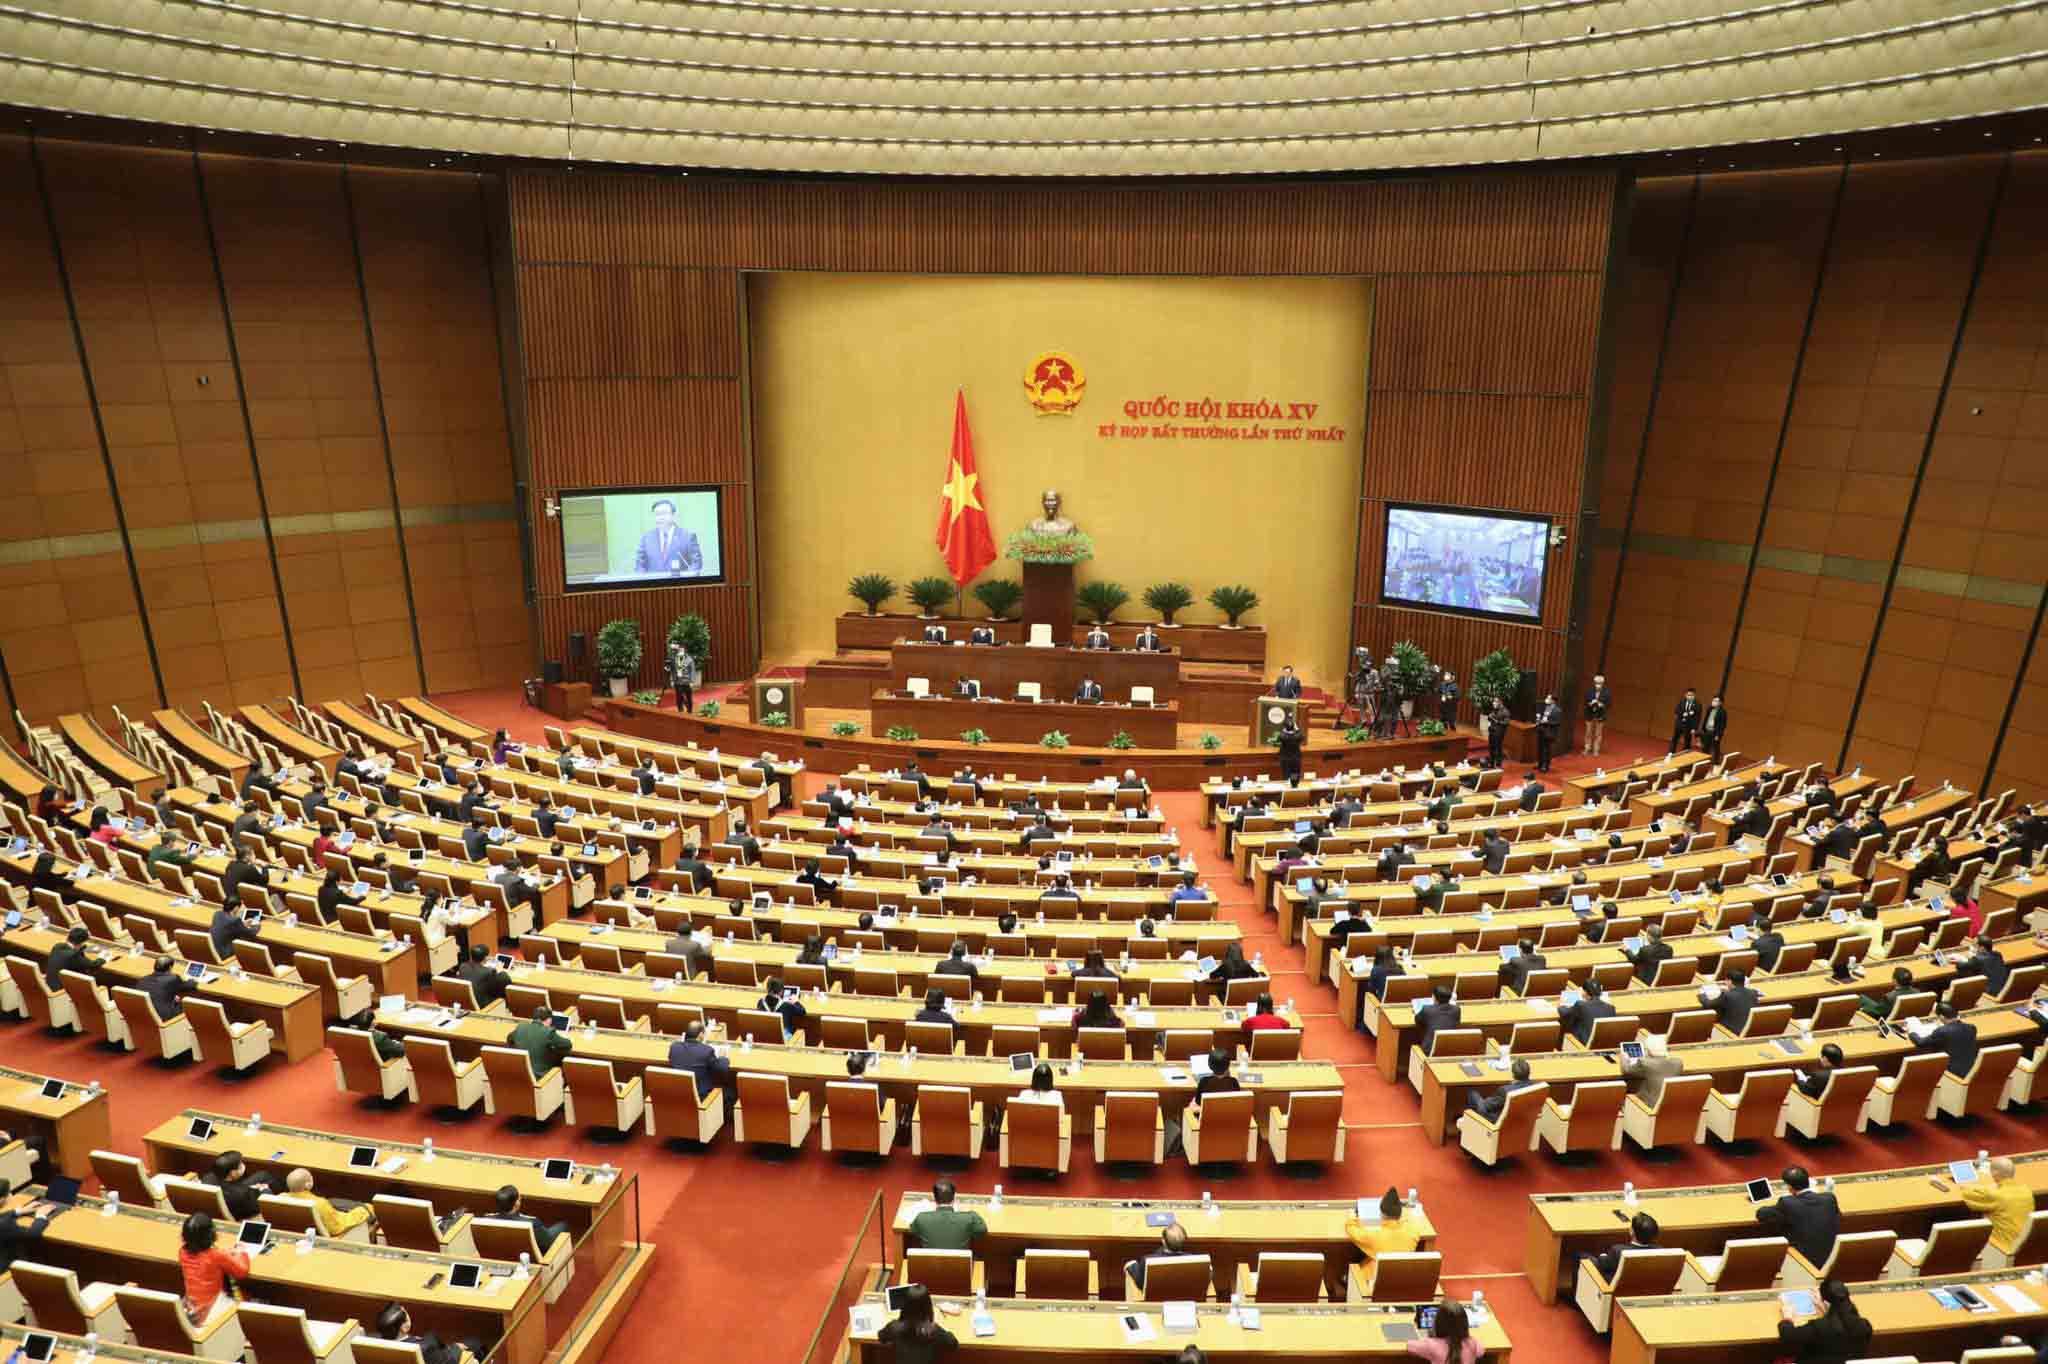 Toàn văn phát biểu khai mạc của Chủ tịch Quốc hội tại kỳ họp bất thường